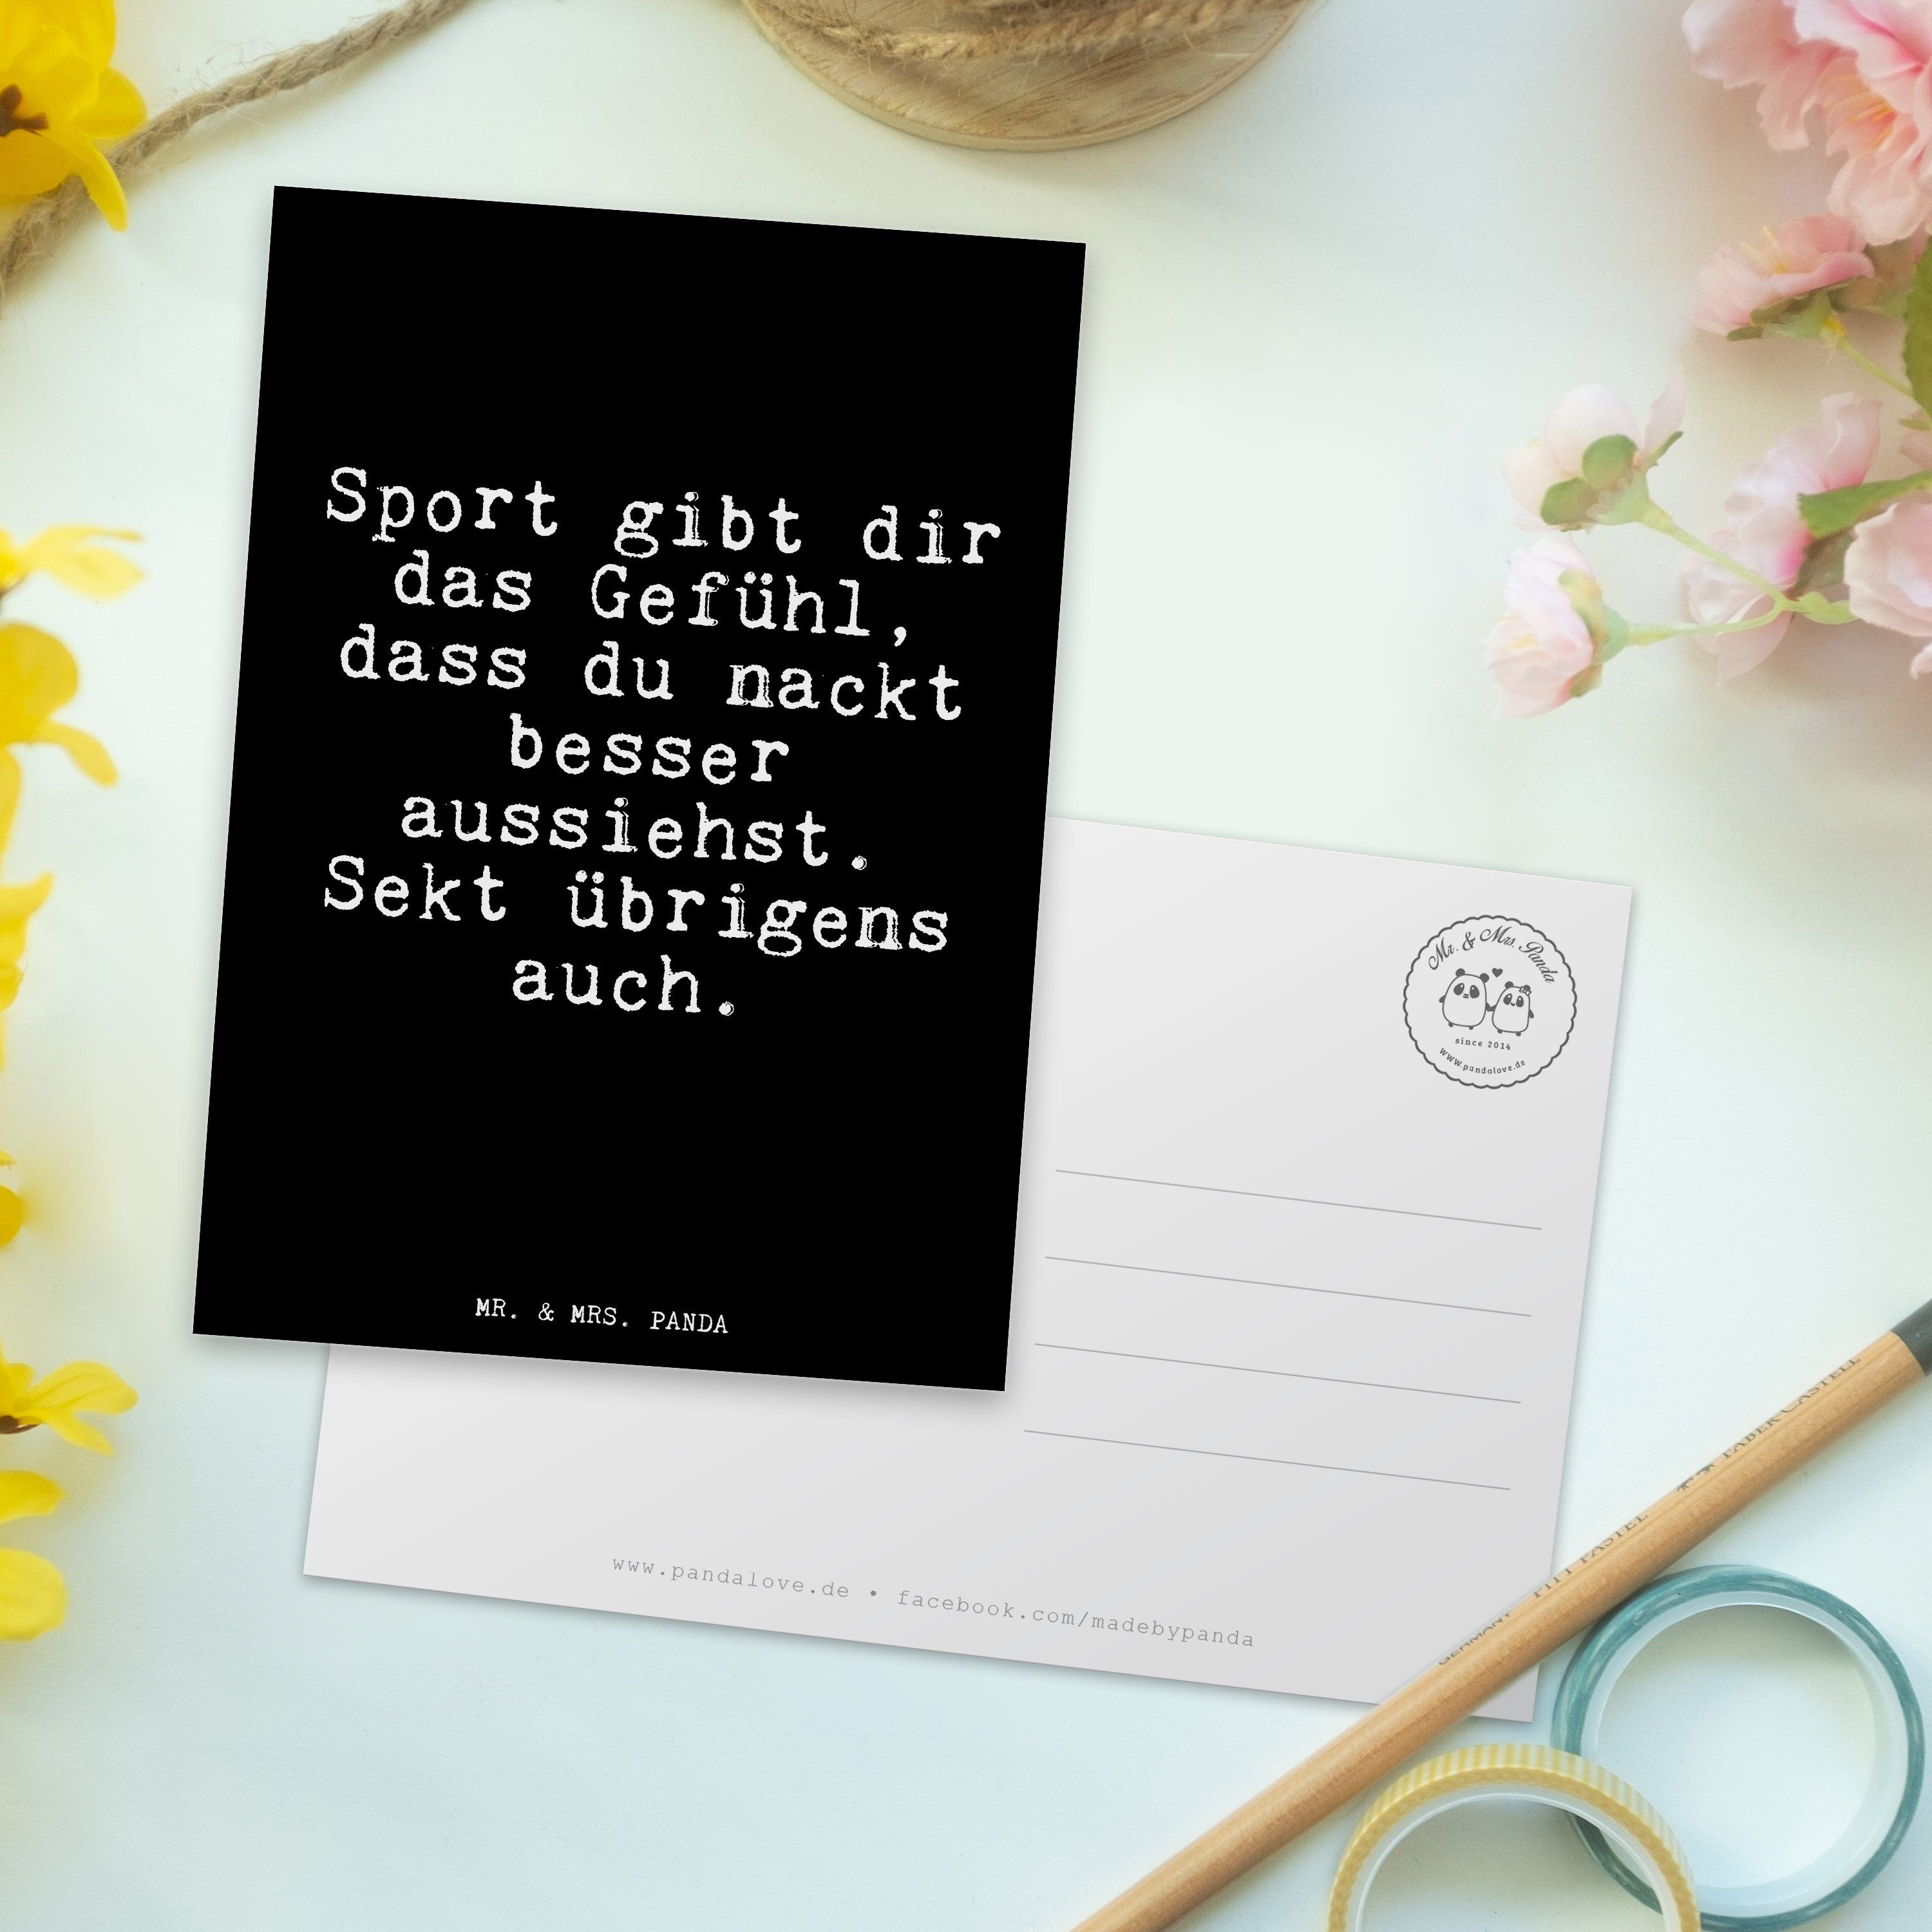 Mr. & Mrs. dir - Geschenk, Schwarz gibt Panda Postkarte - Spruch, Sport Geburtstagskarte das